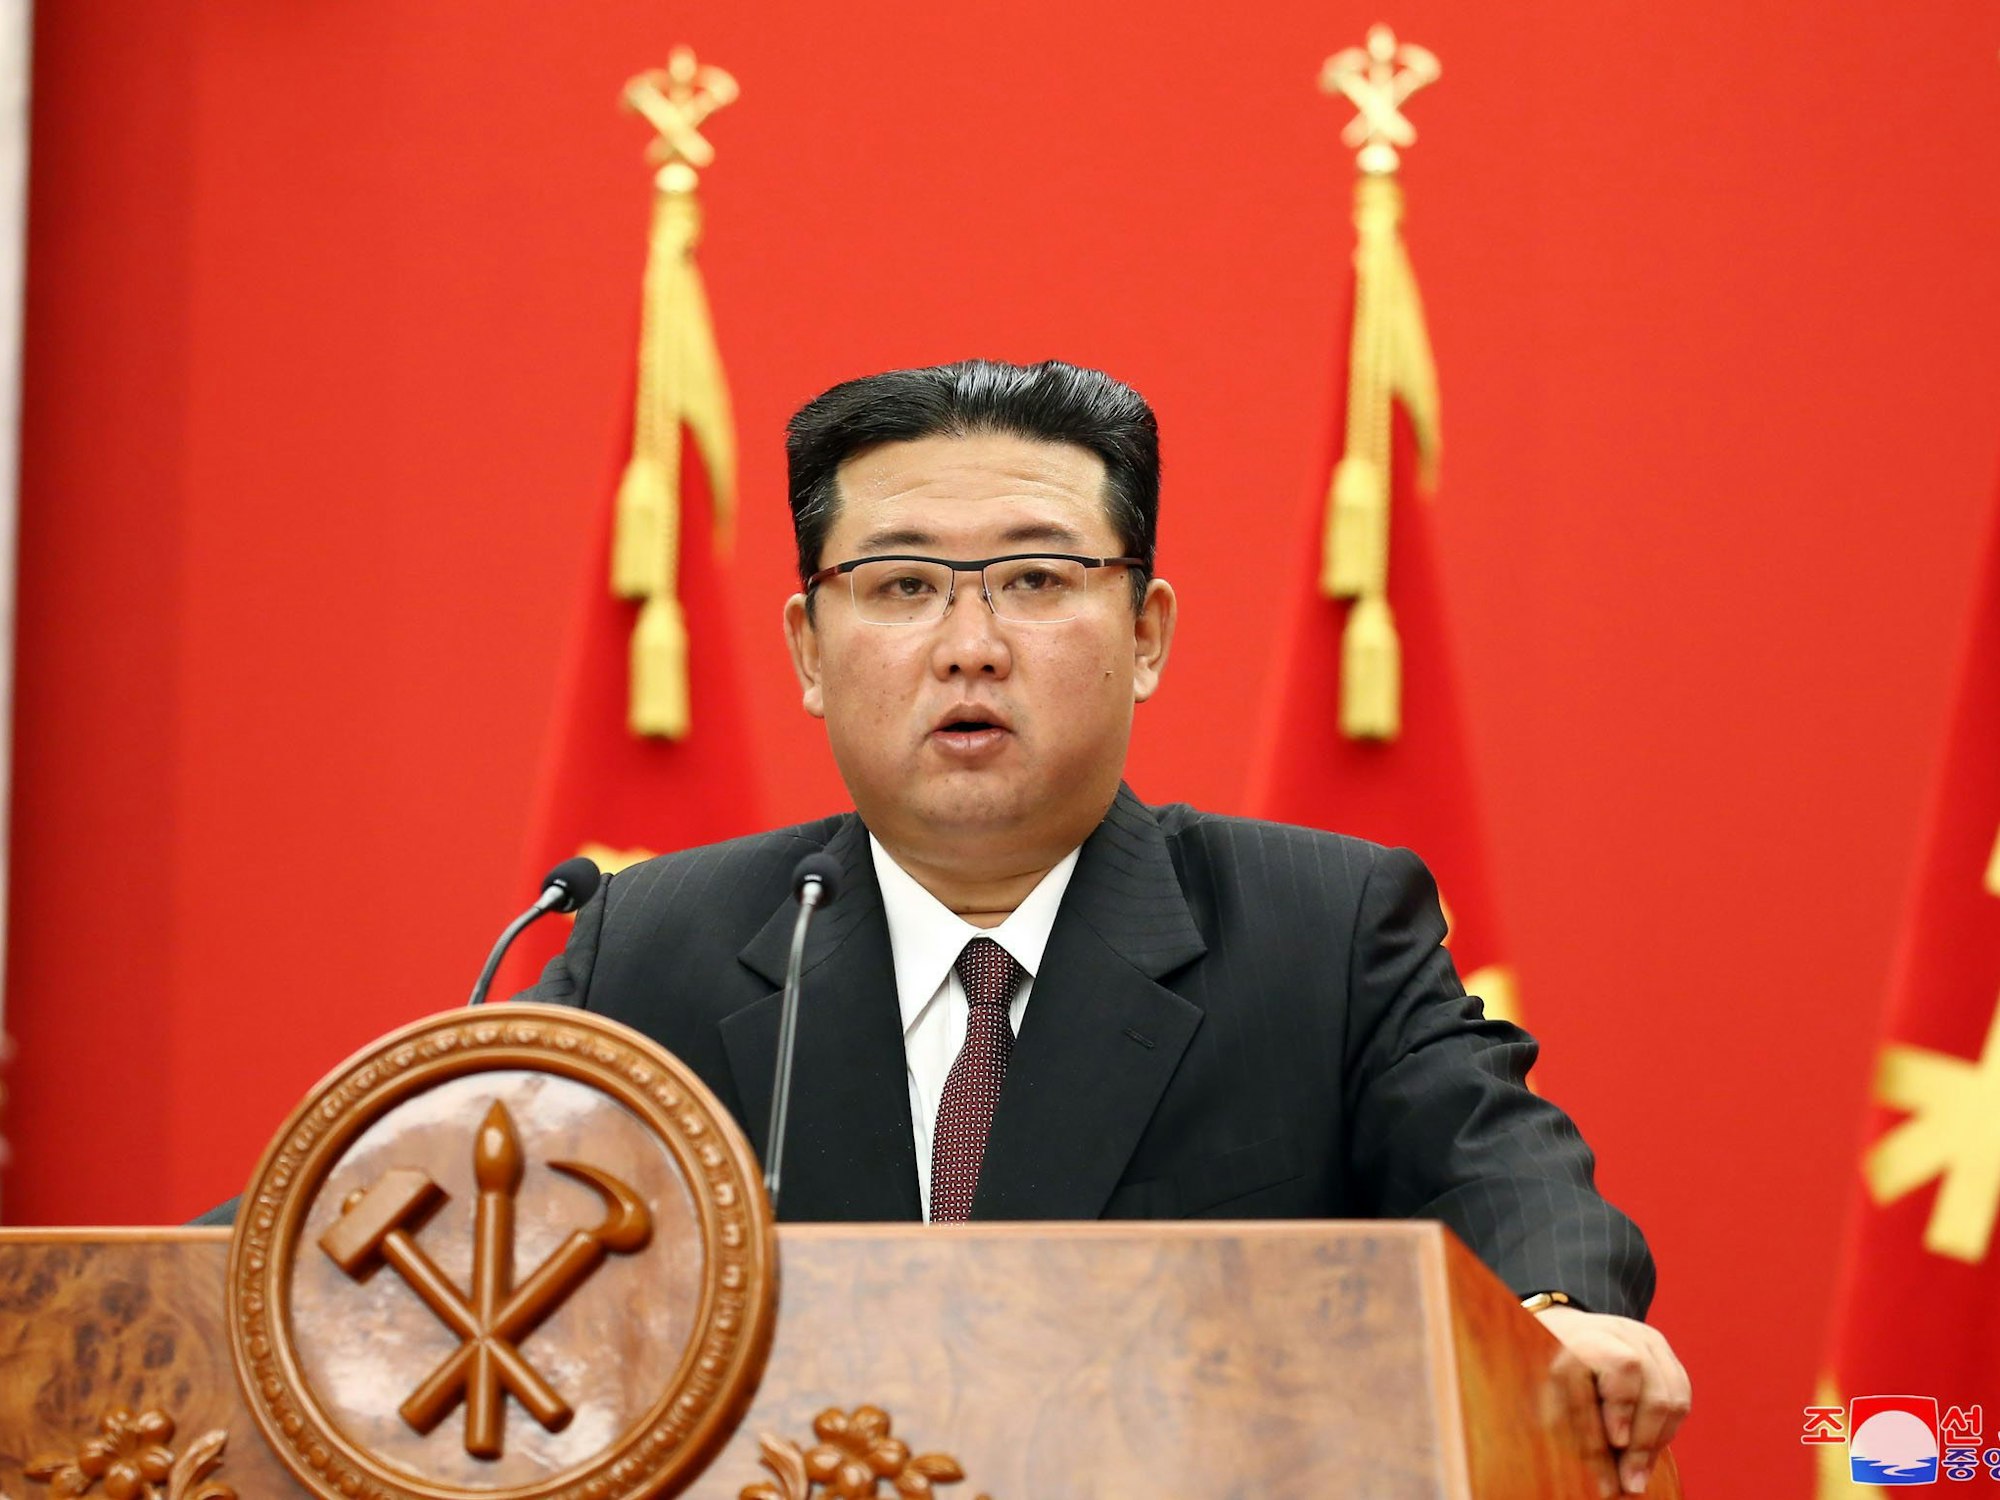 Nordkorea: Diktator Kim Jong Un spricht über düstere Lage des Landes